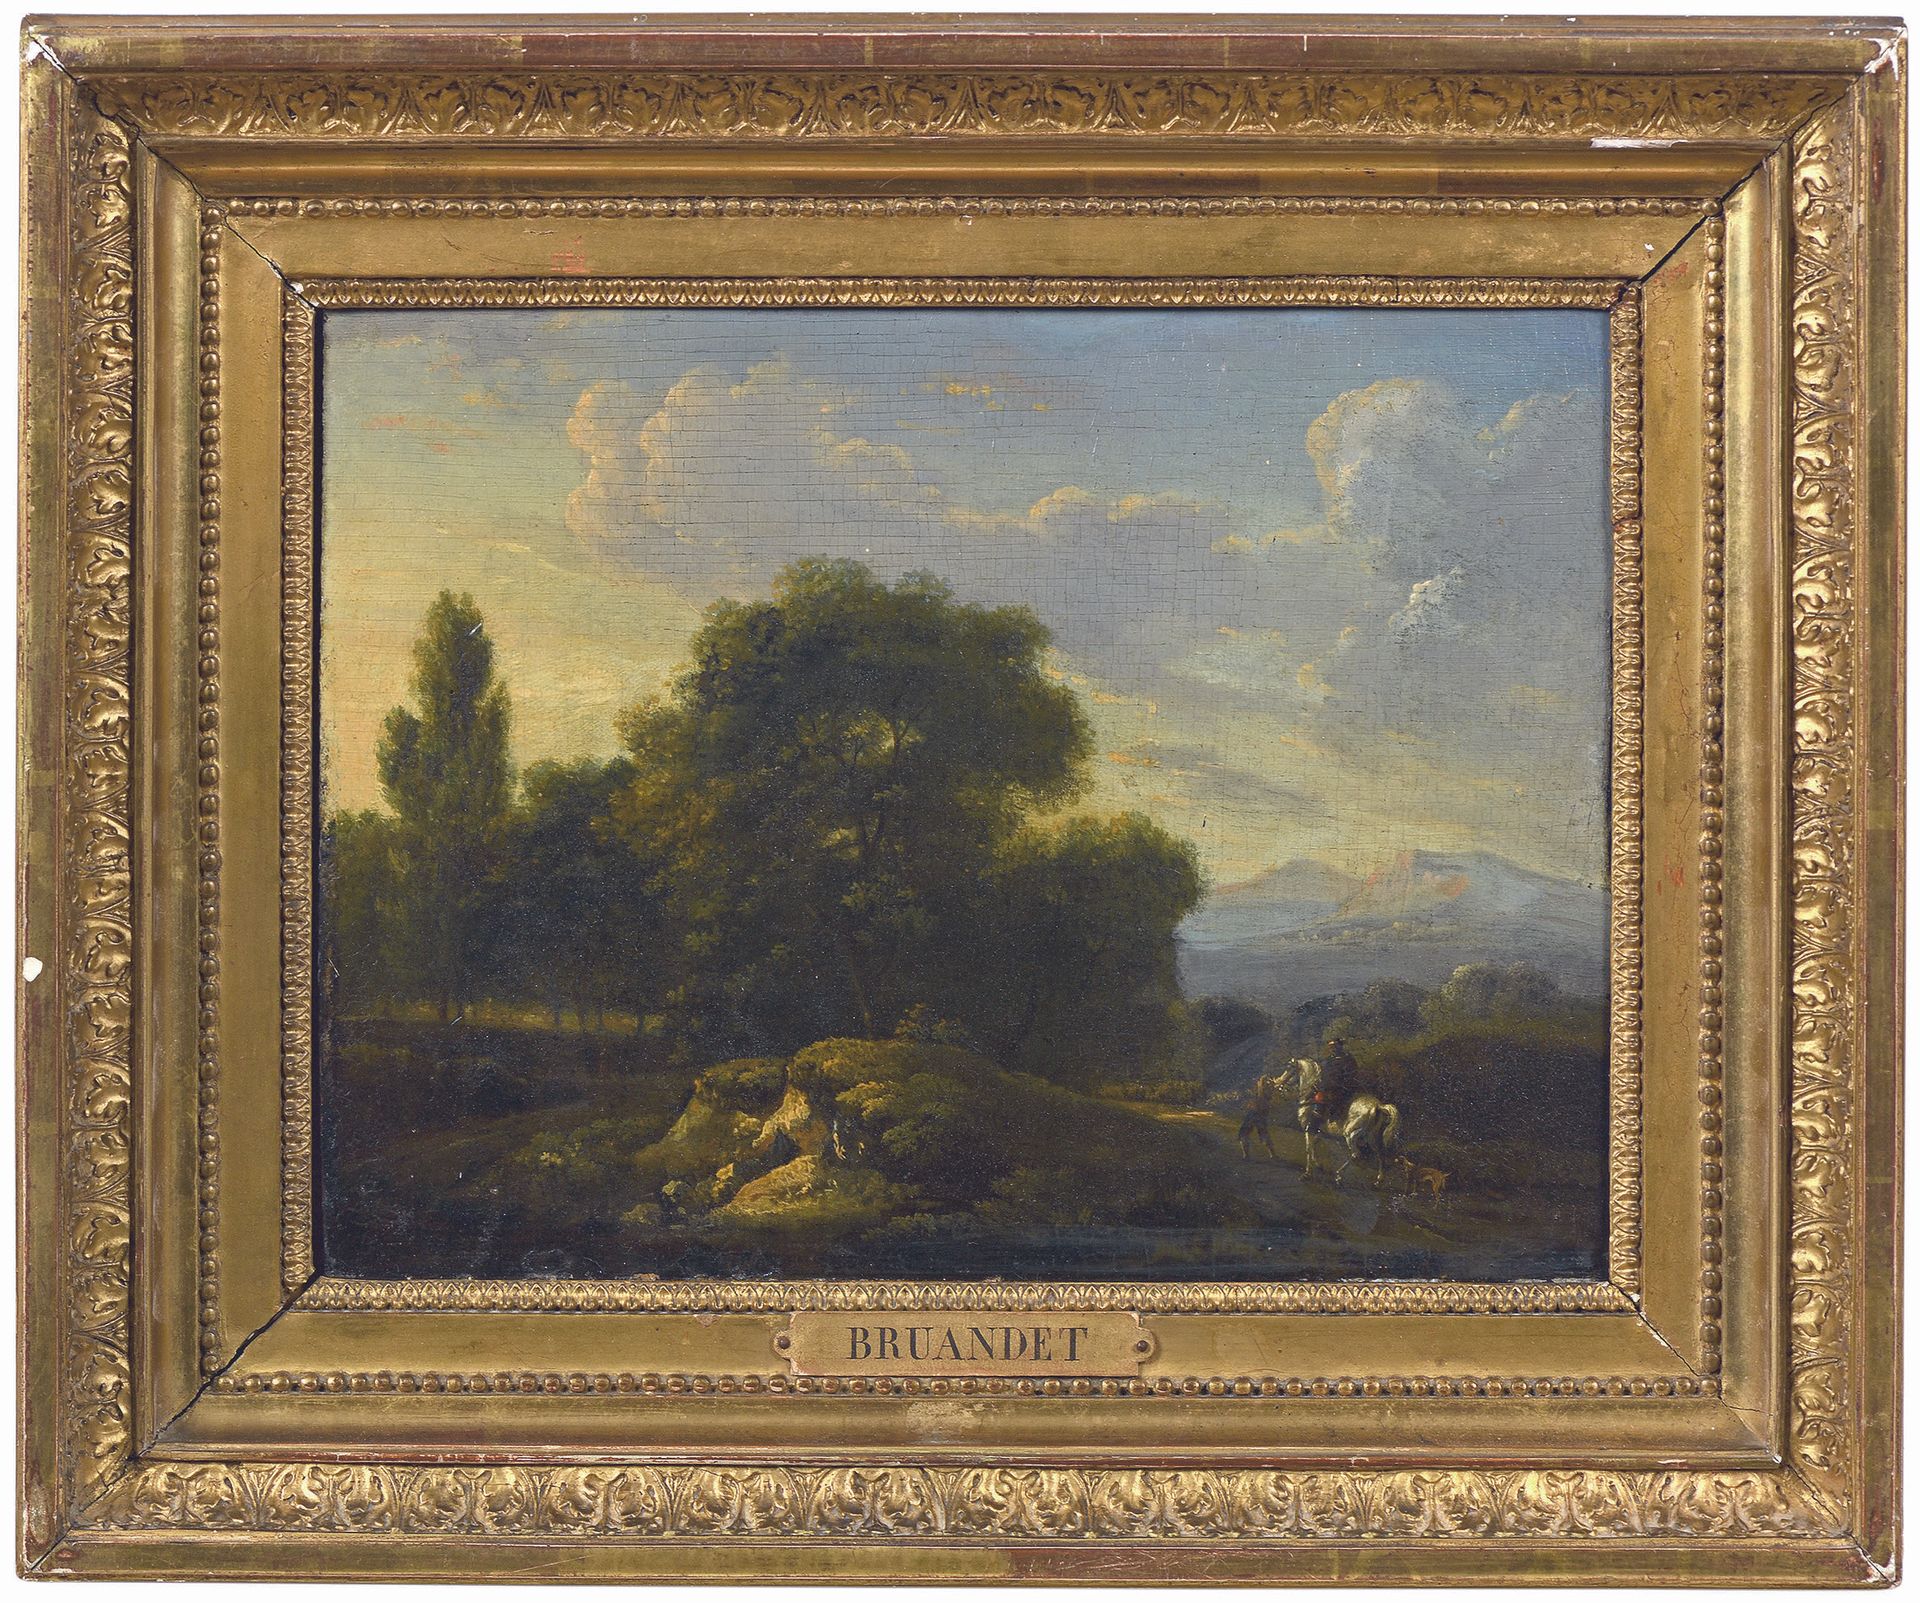 Null Lazare BRUANDET (1755-1804)
Belebte Landschaft mit Figuren
Öl auf einer Hol&hellip;